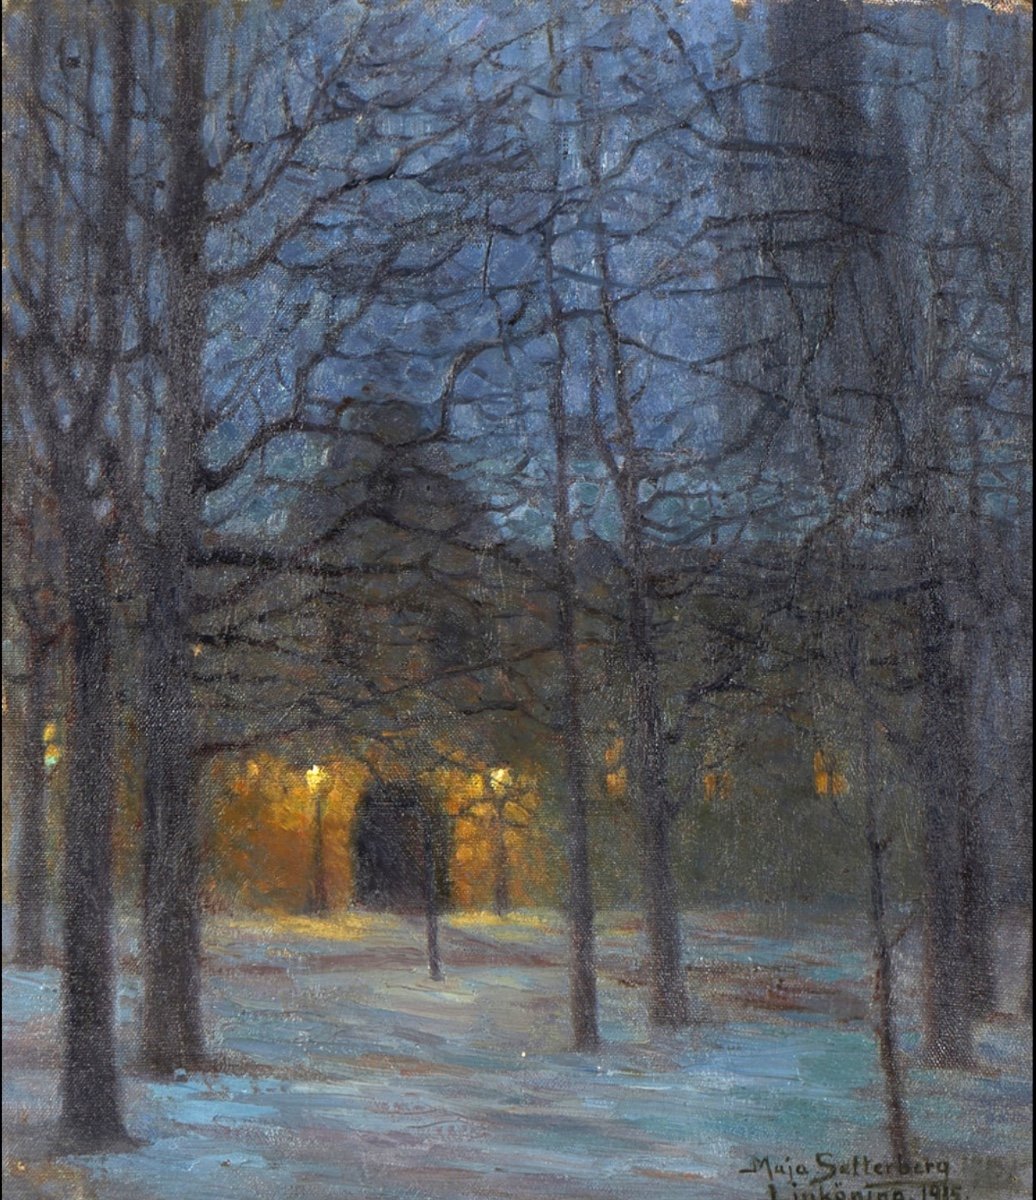 Winter Night, Maja Settelberg, 1915 Oil On Canvas